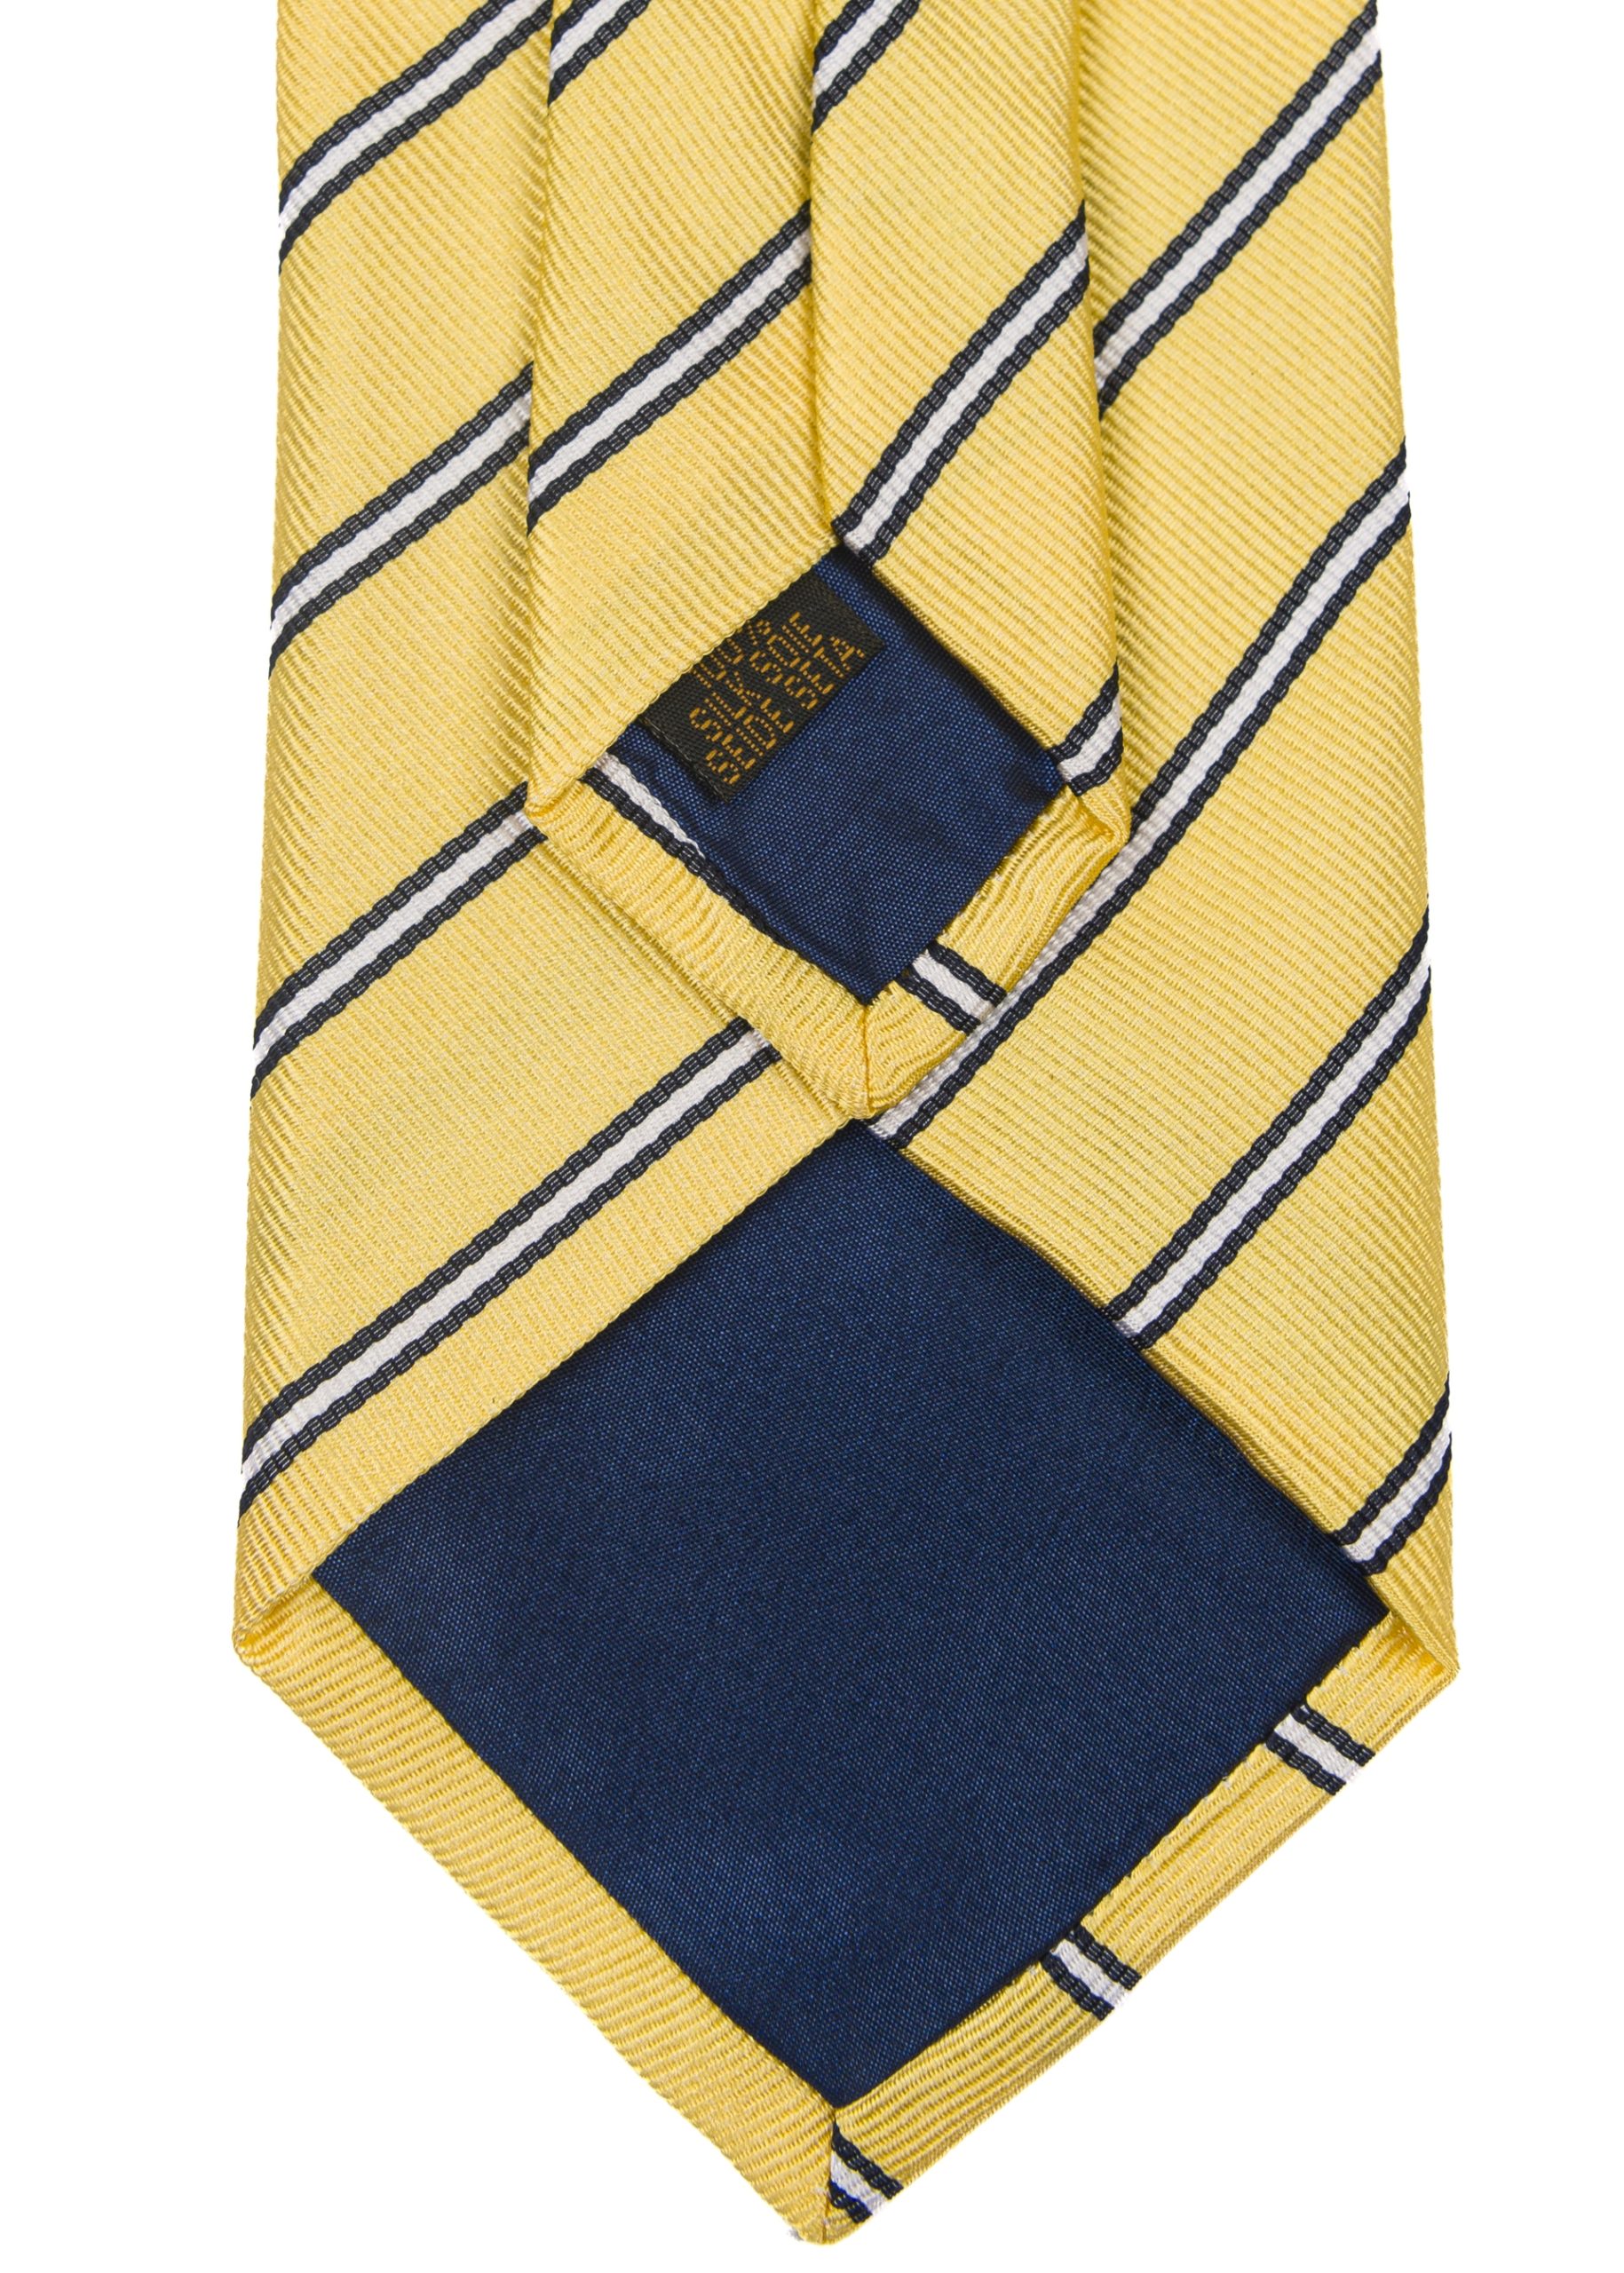 Men’s silk navy striped tie